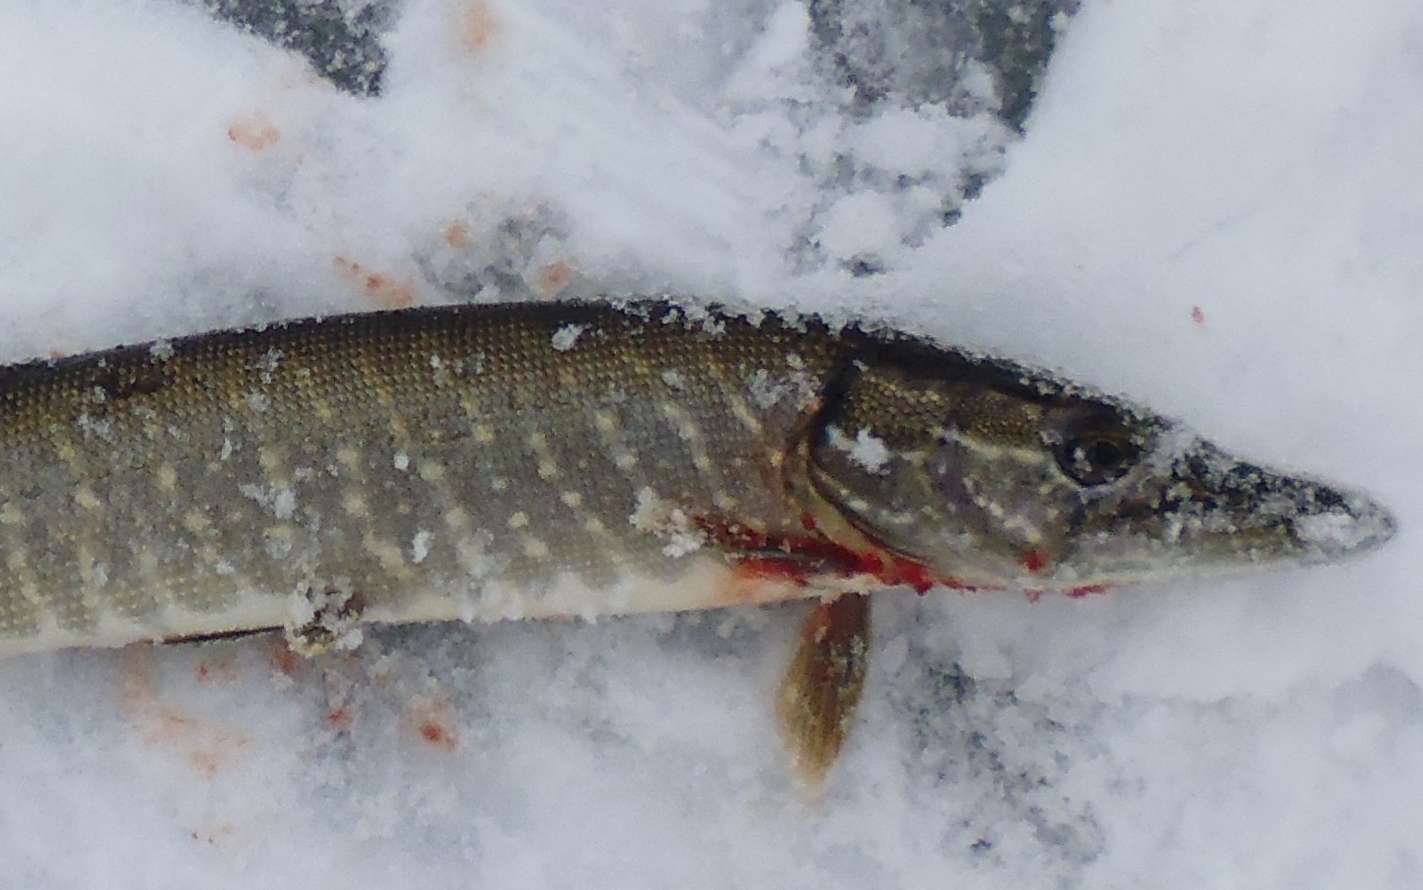 Зимняя рыбалка на щуку